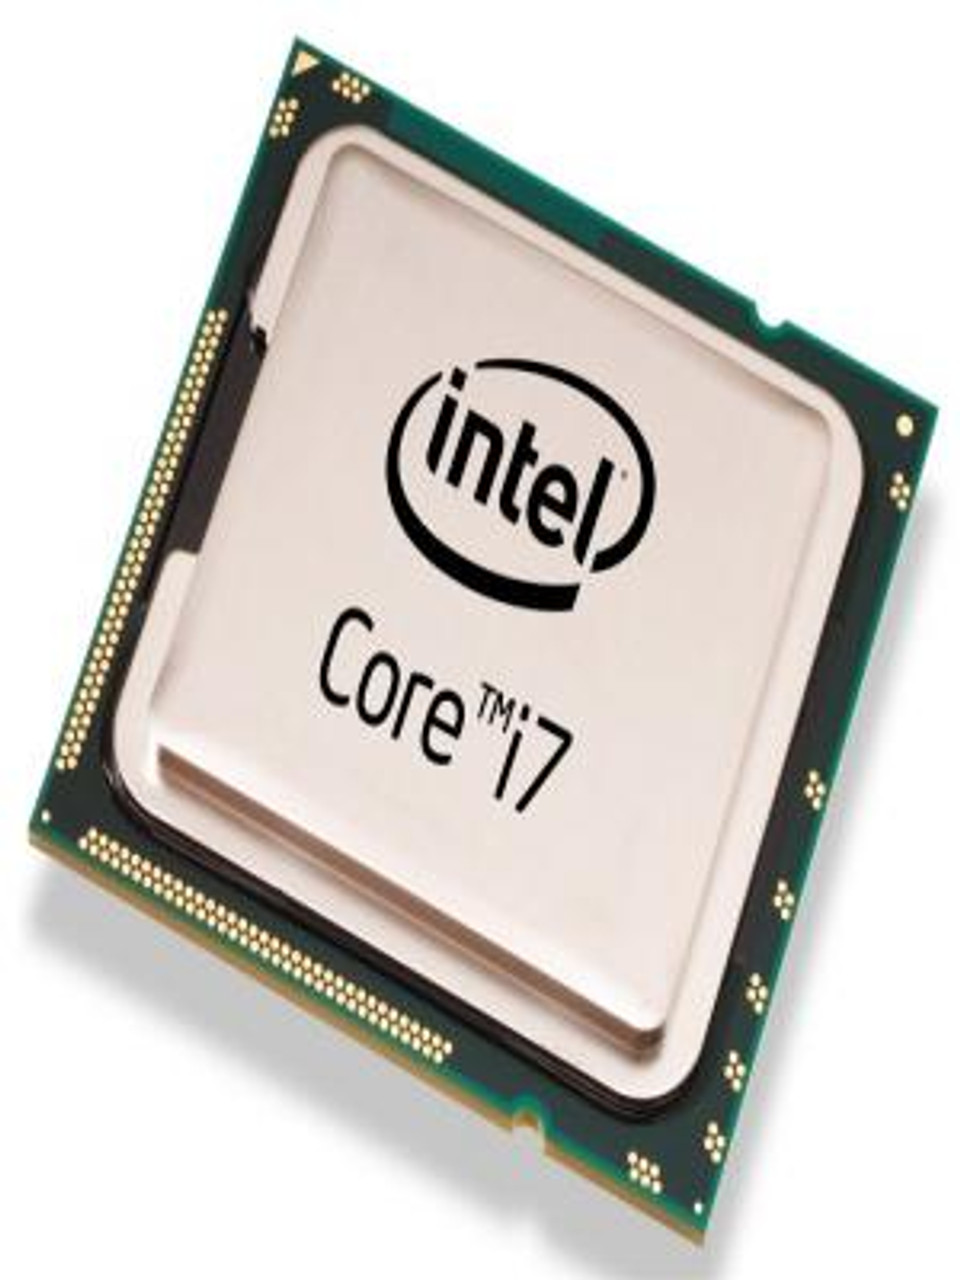 BY80607002526AE Intel Core i7-940 2.93GHz L3 Desktop CPU